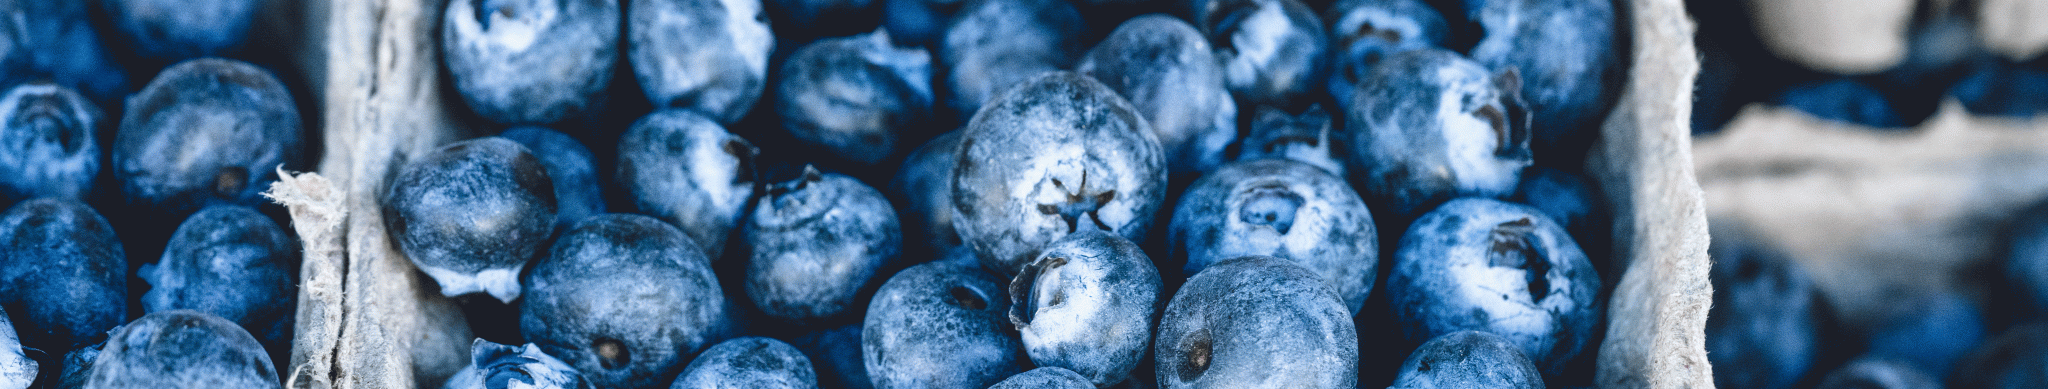 Blue berries.